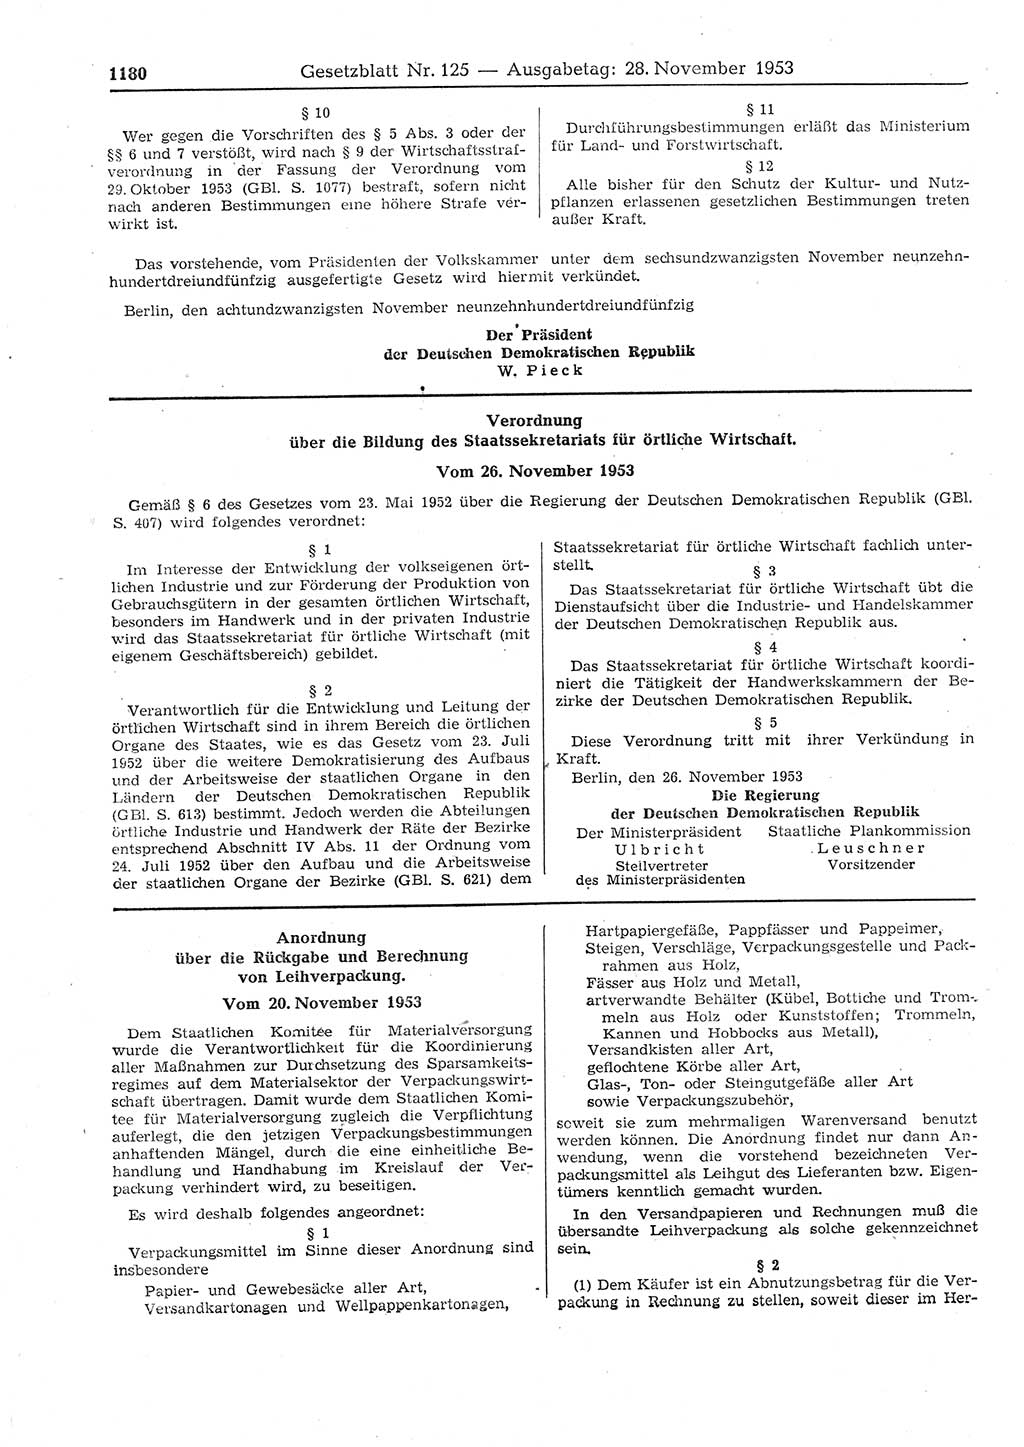 Gesetzblatt (GBl.) der Deutschen Demokratischen Republik (DDR) 1953, Seite 1180 (GBl. DDR 1953, S. 1180)